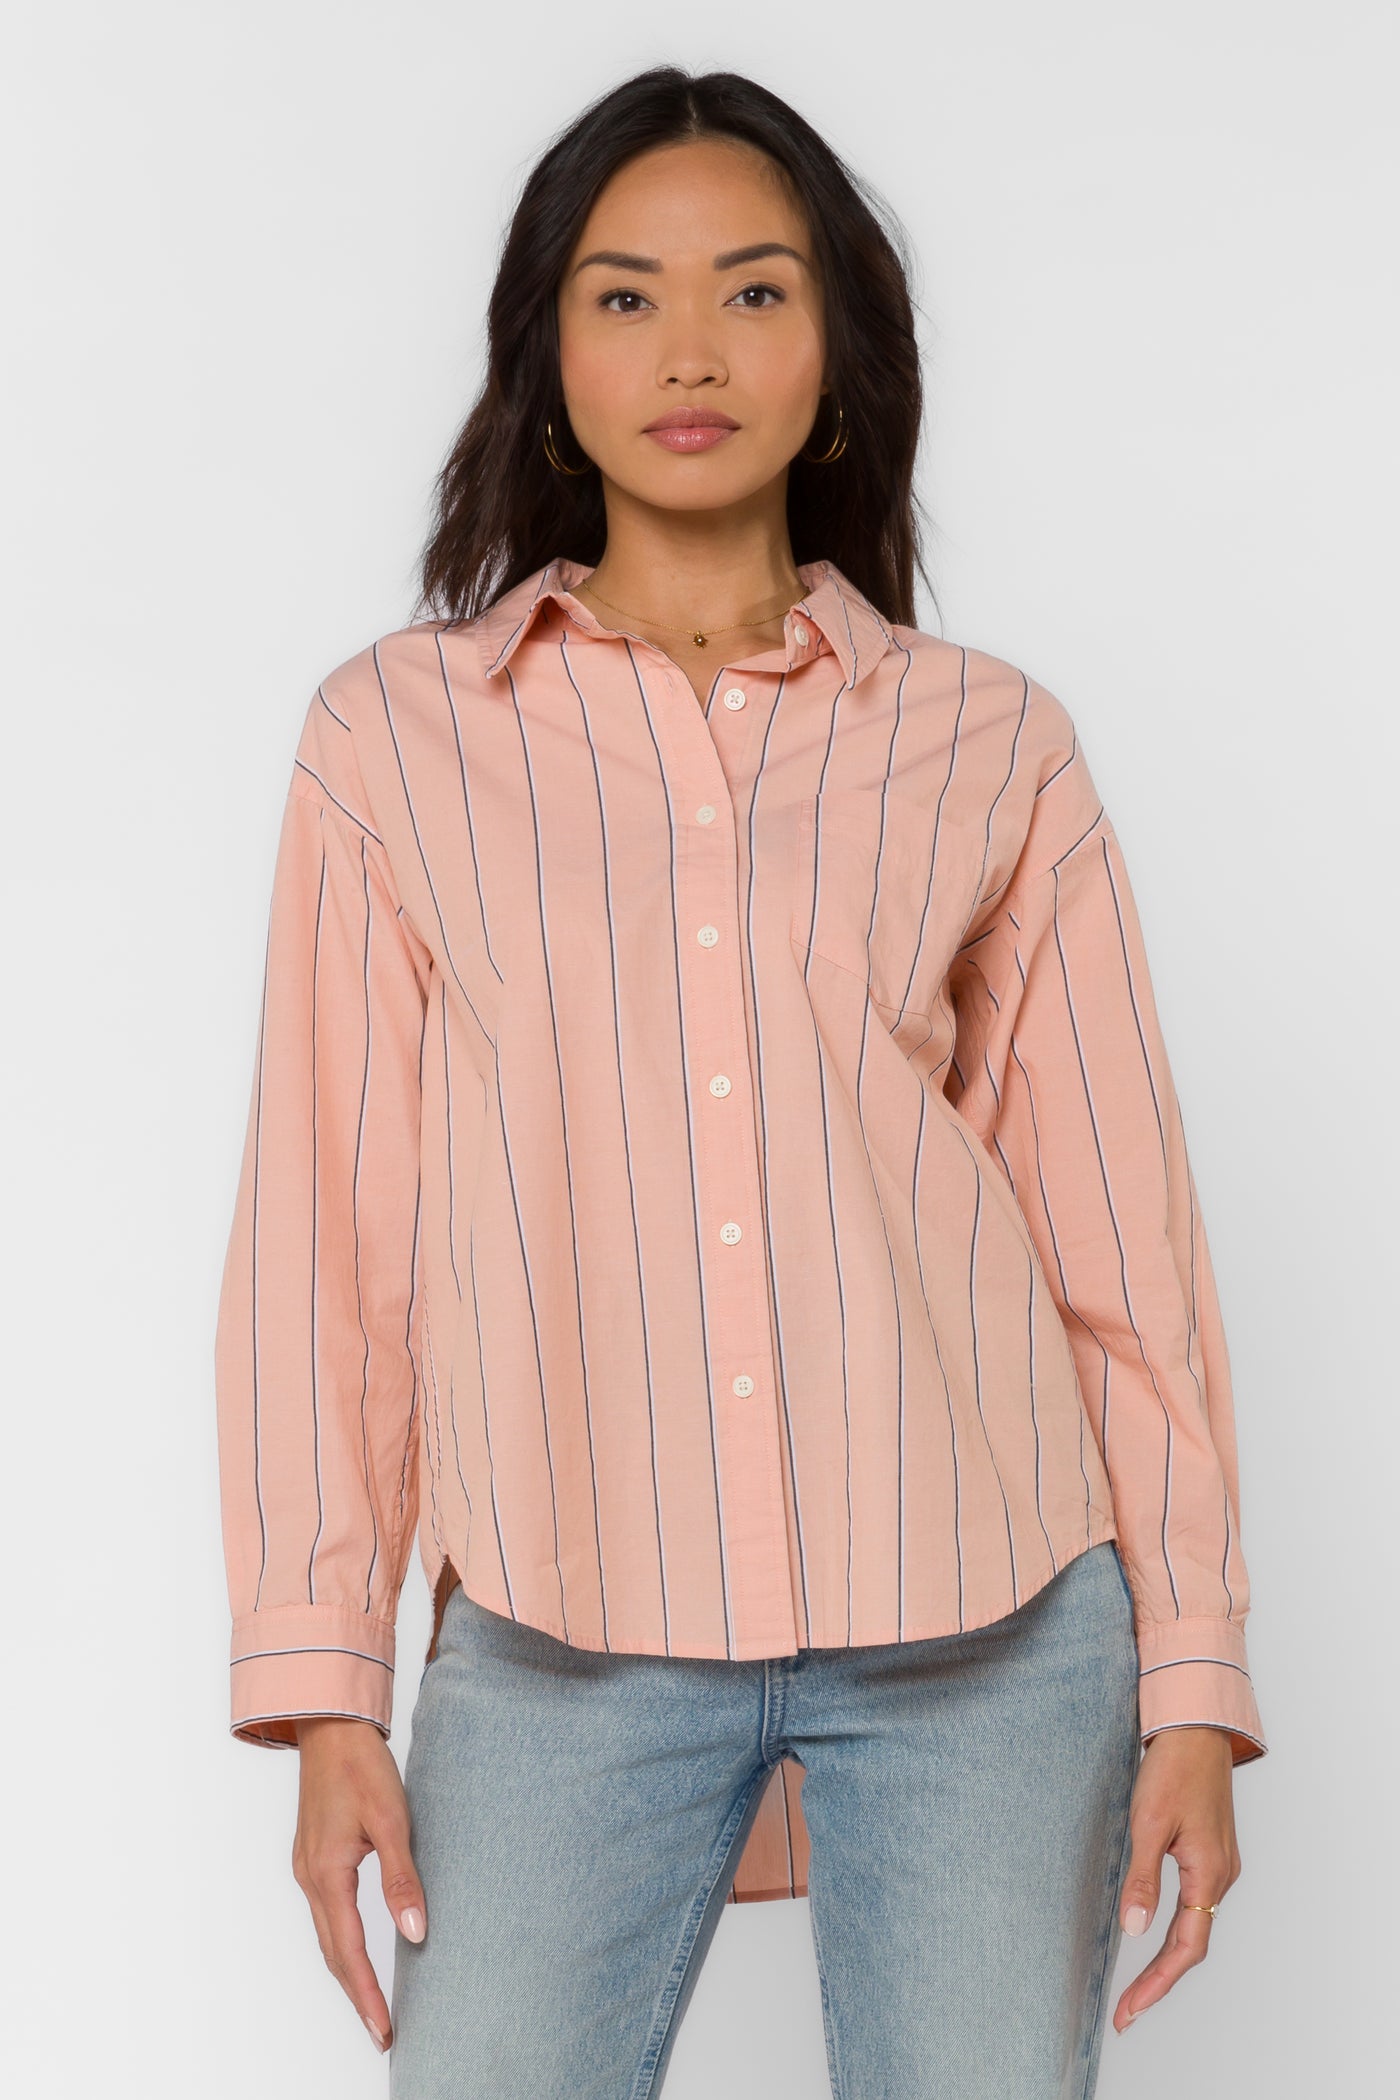 Randall Peach Stripe Shirt - Tops - Velvet Heart Clothing